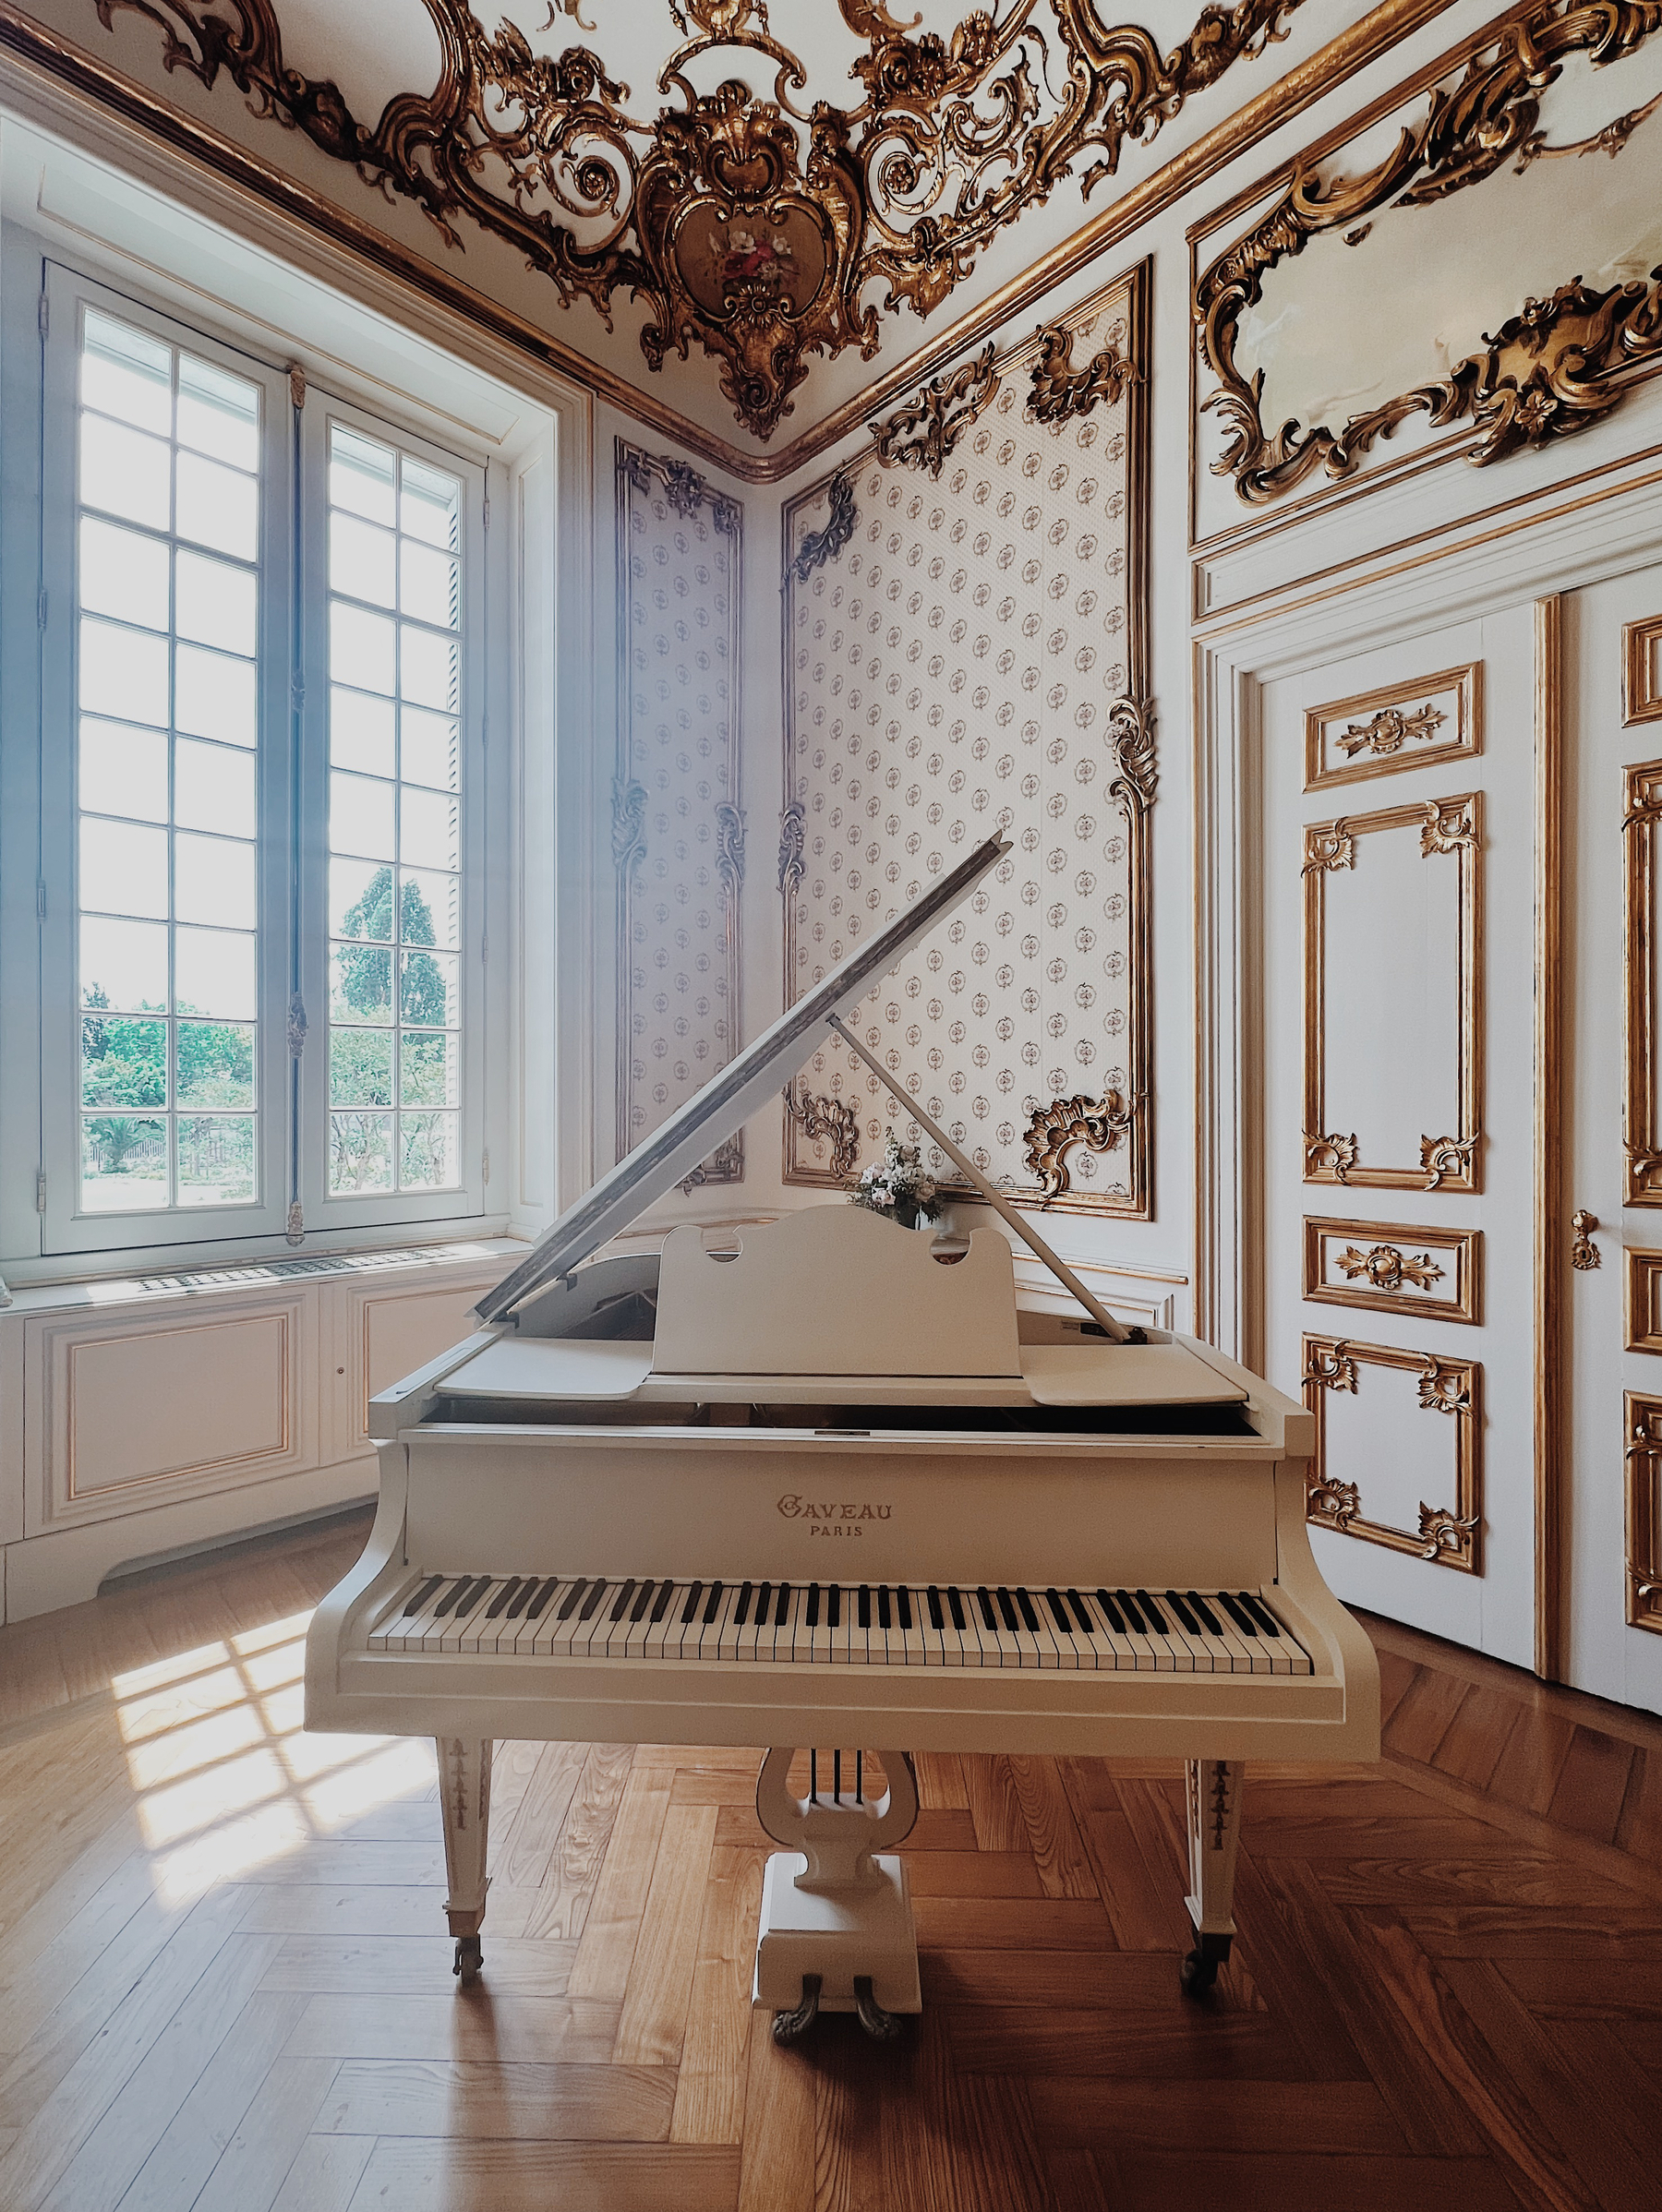 A vintage piano in a lavish room. 